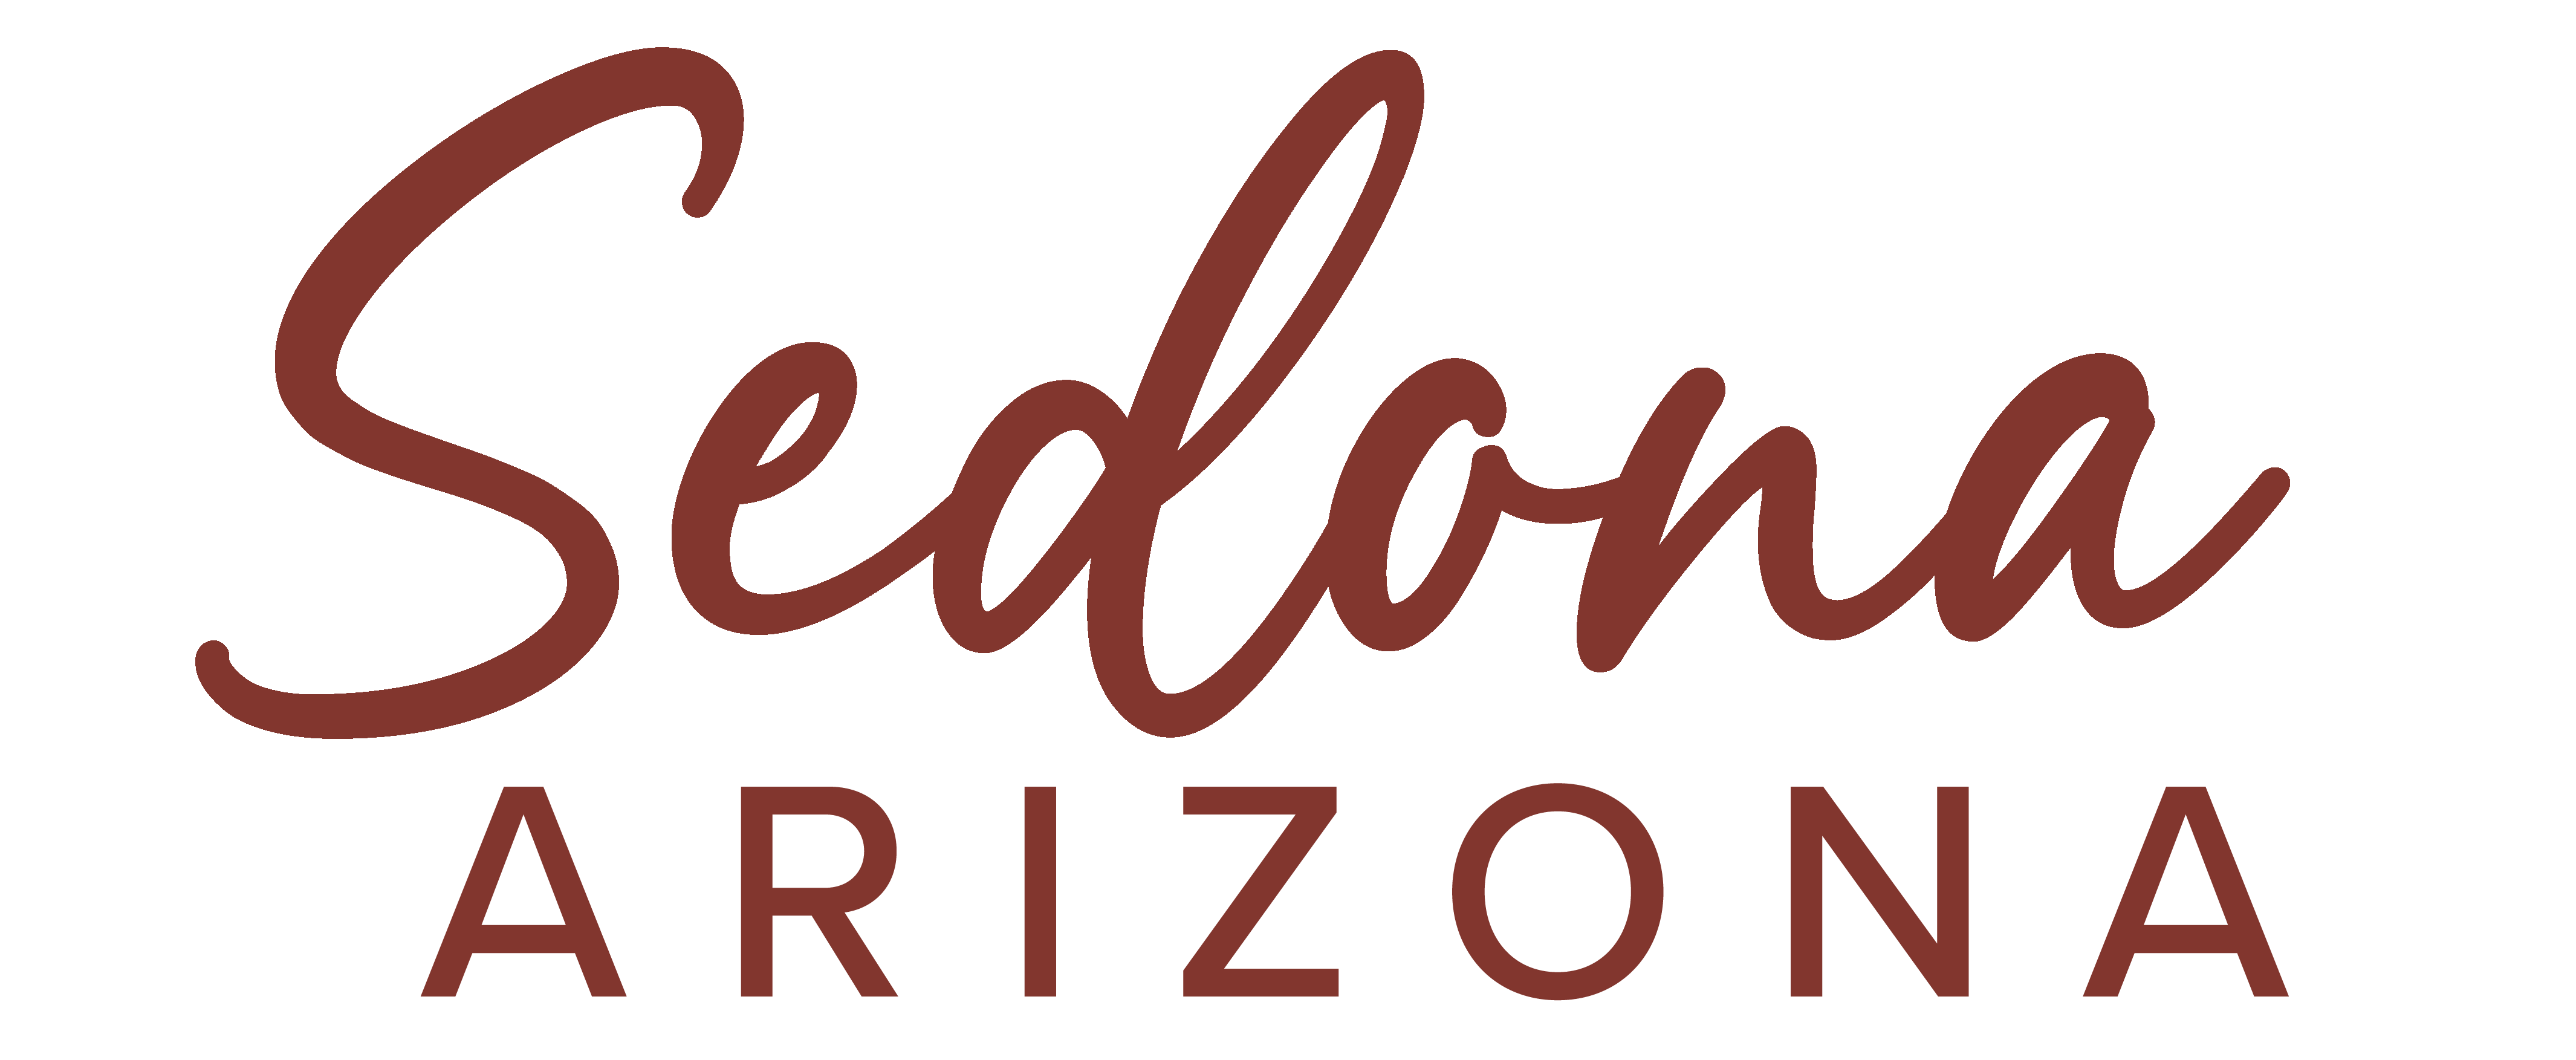 Sedona Logo